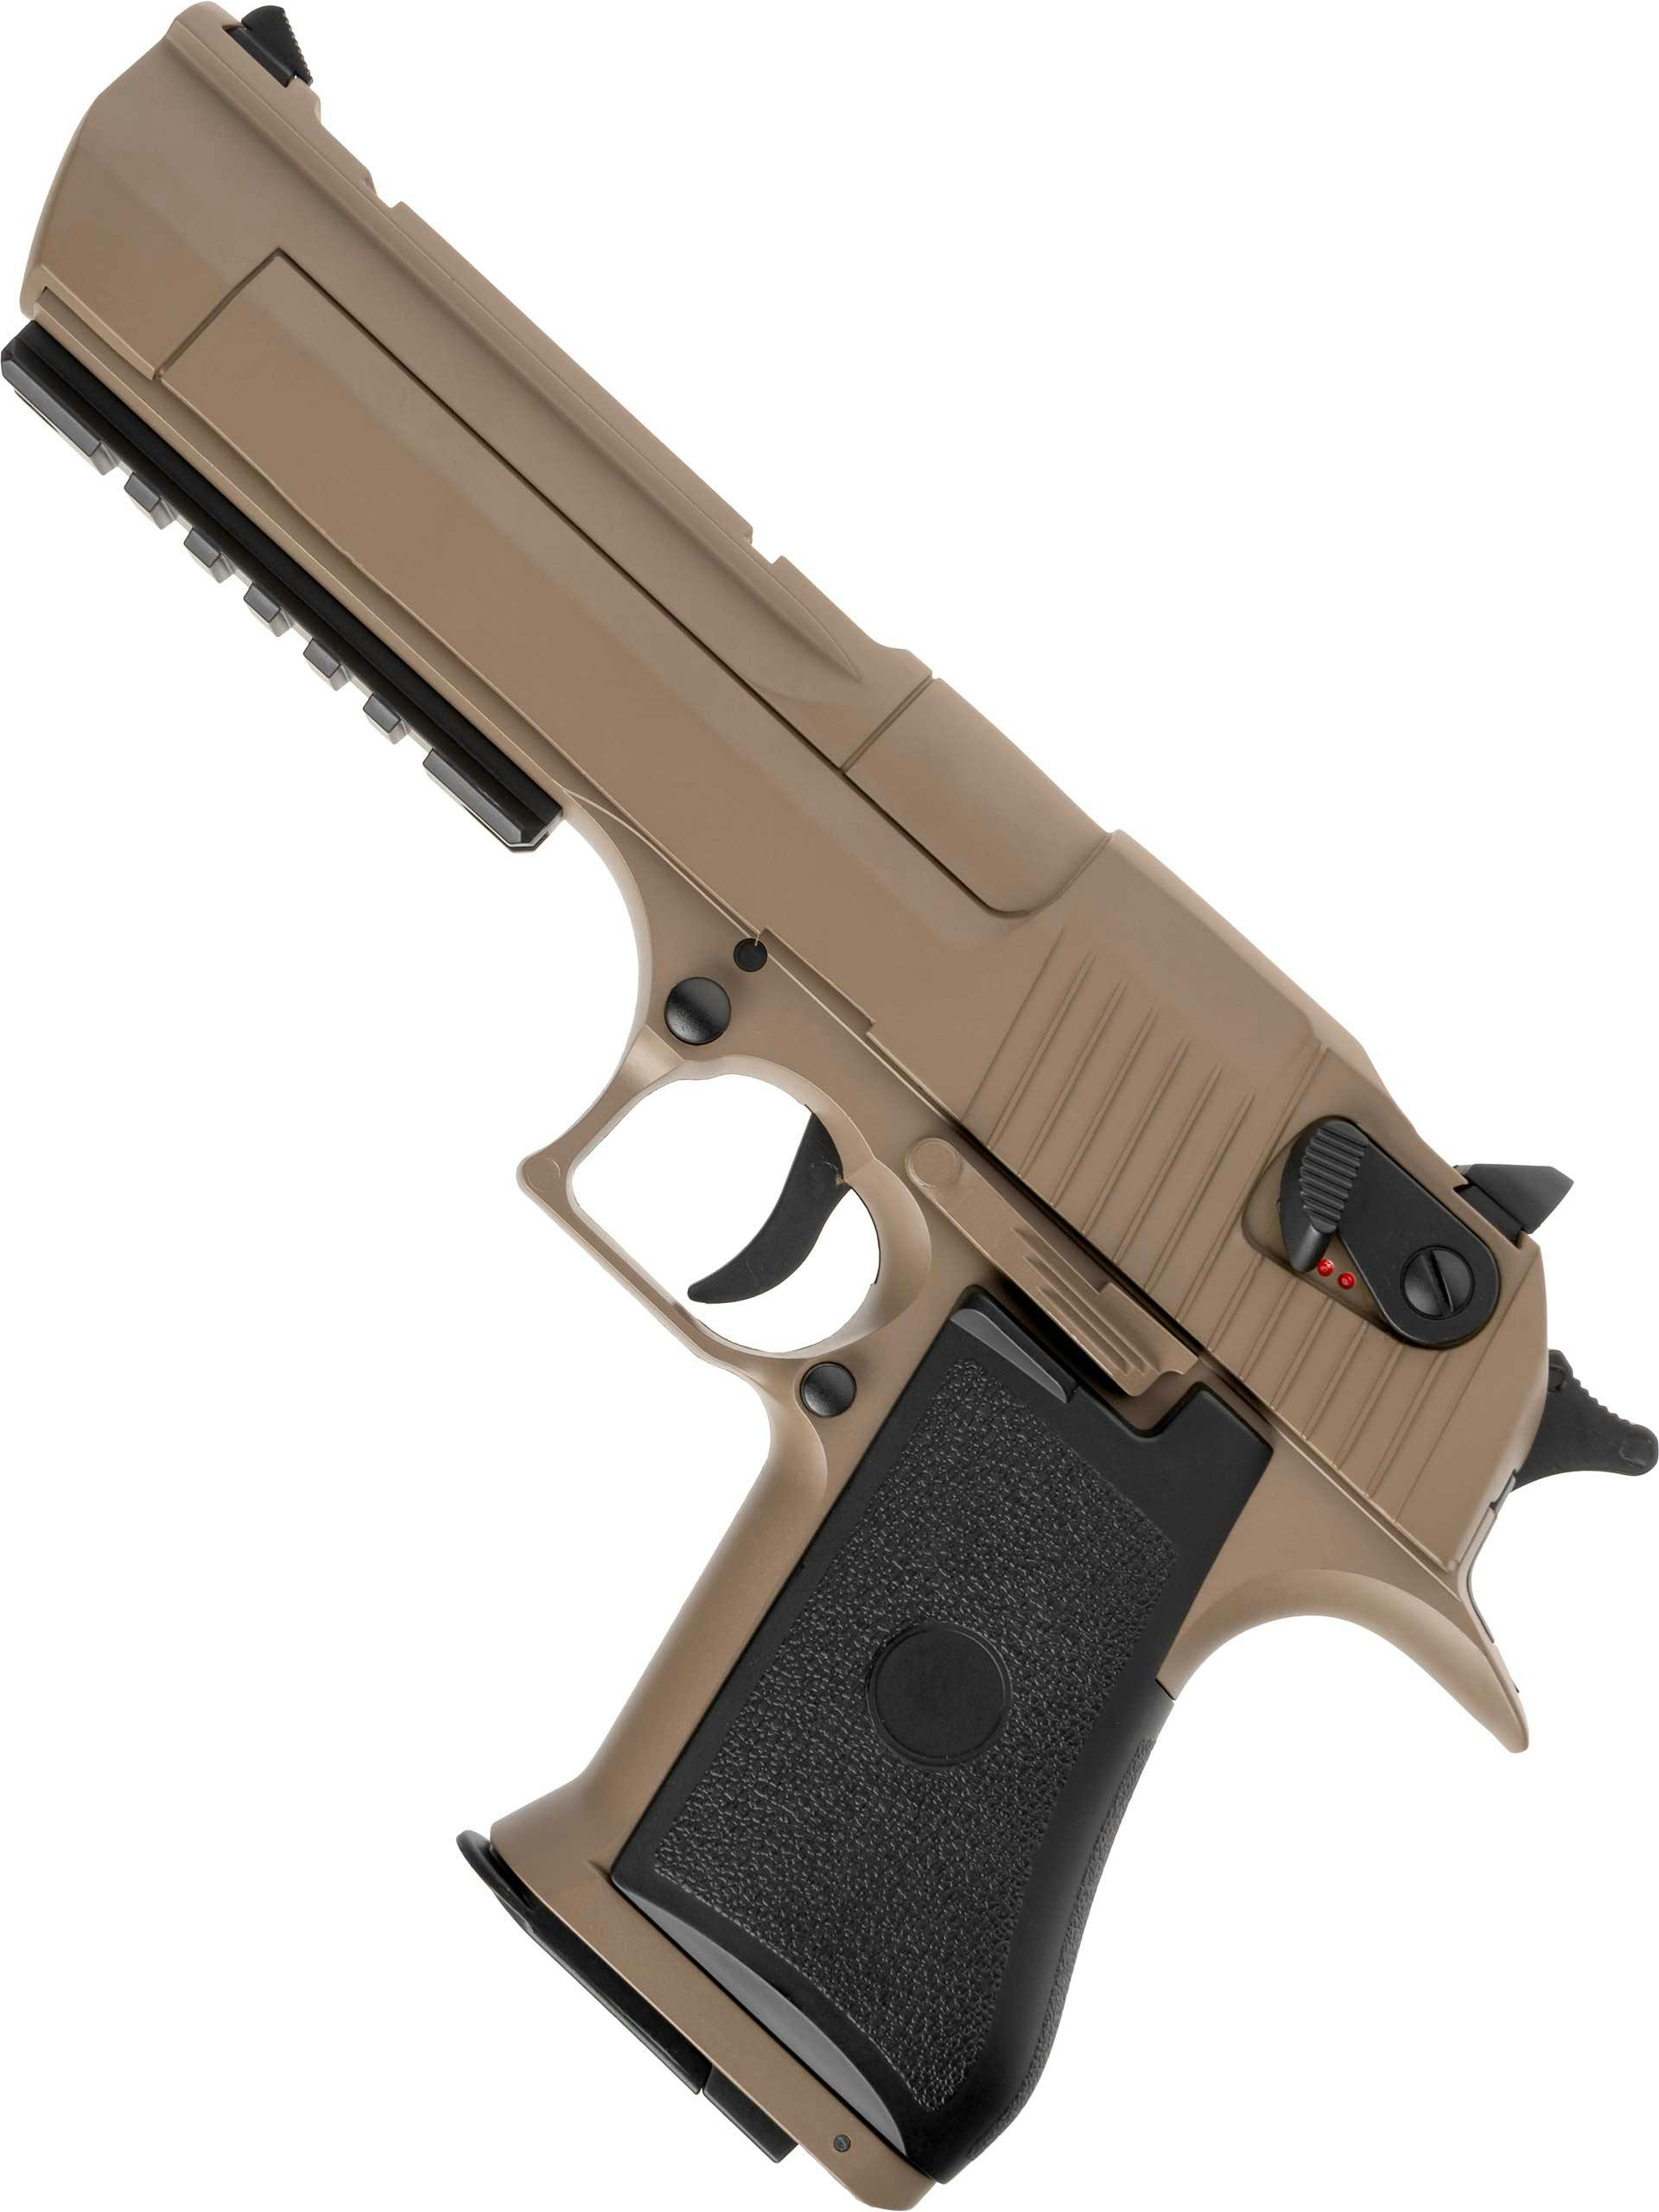 Cyma Desert Eagle CM121 - Pistolas eléctricas - Tienda de Airsoft, replicas  y ropa militar con stock real .